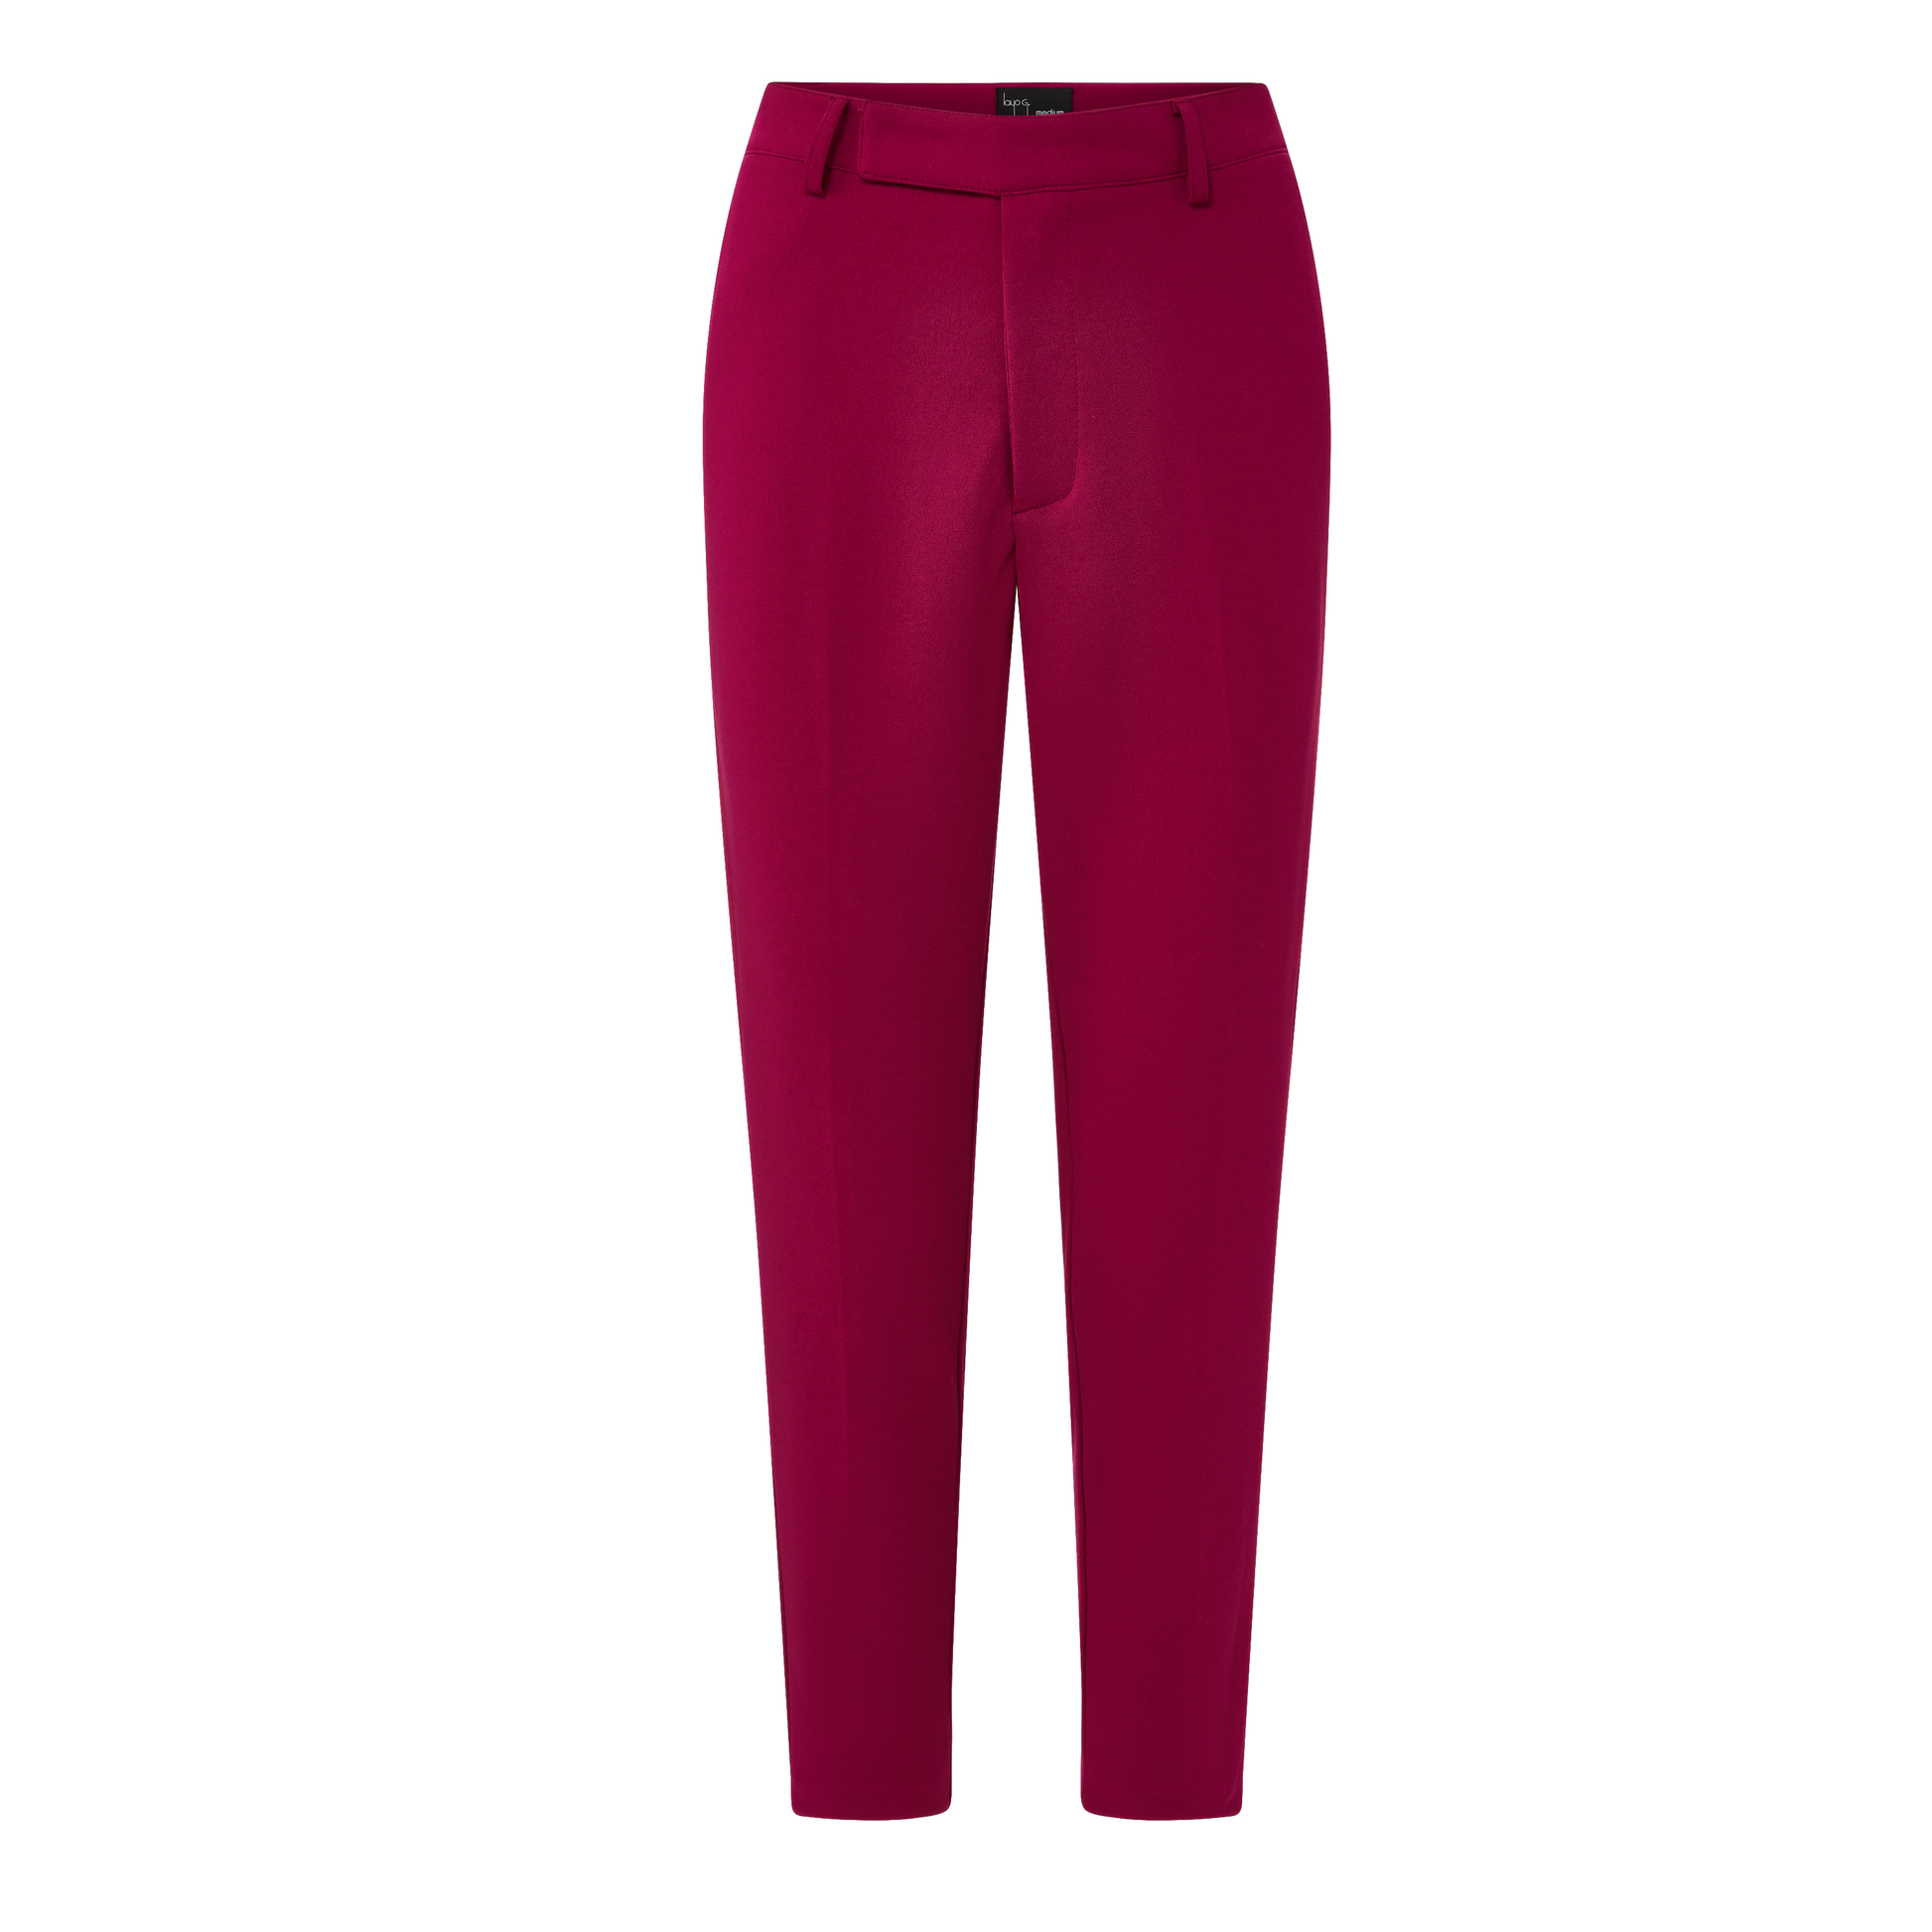 Women's Suits, Fuchsia Pink Suit Pant